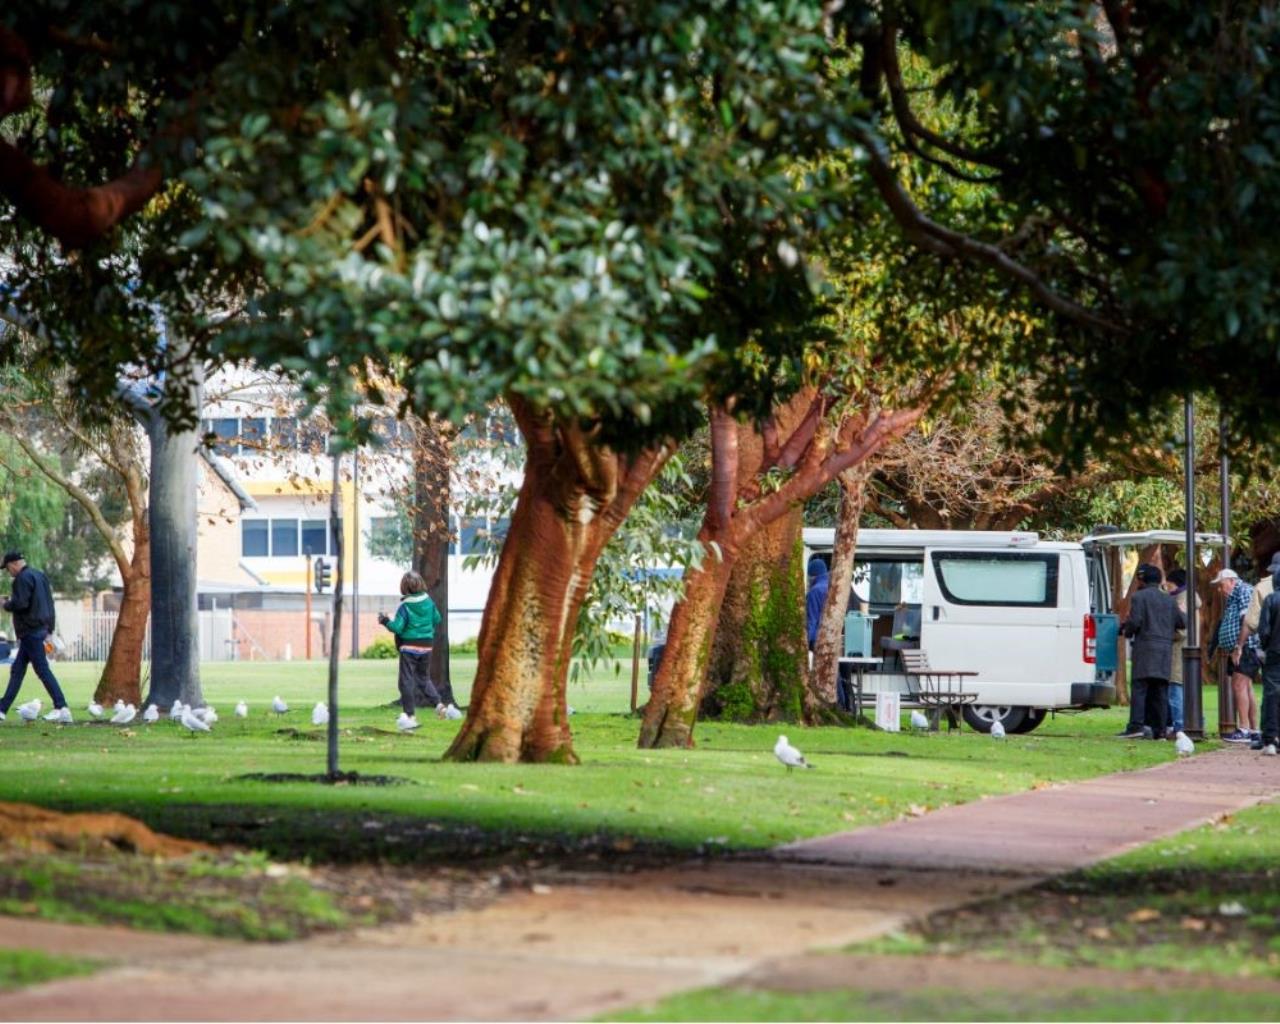 Mobile food van feeding homeless in park